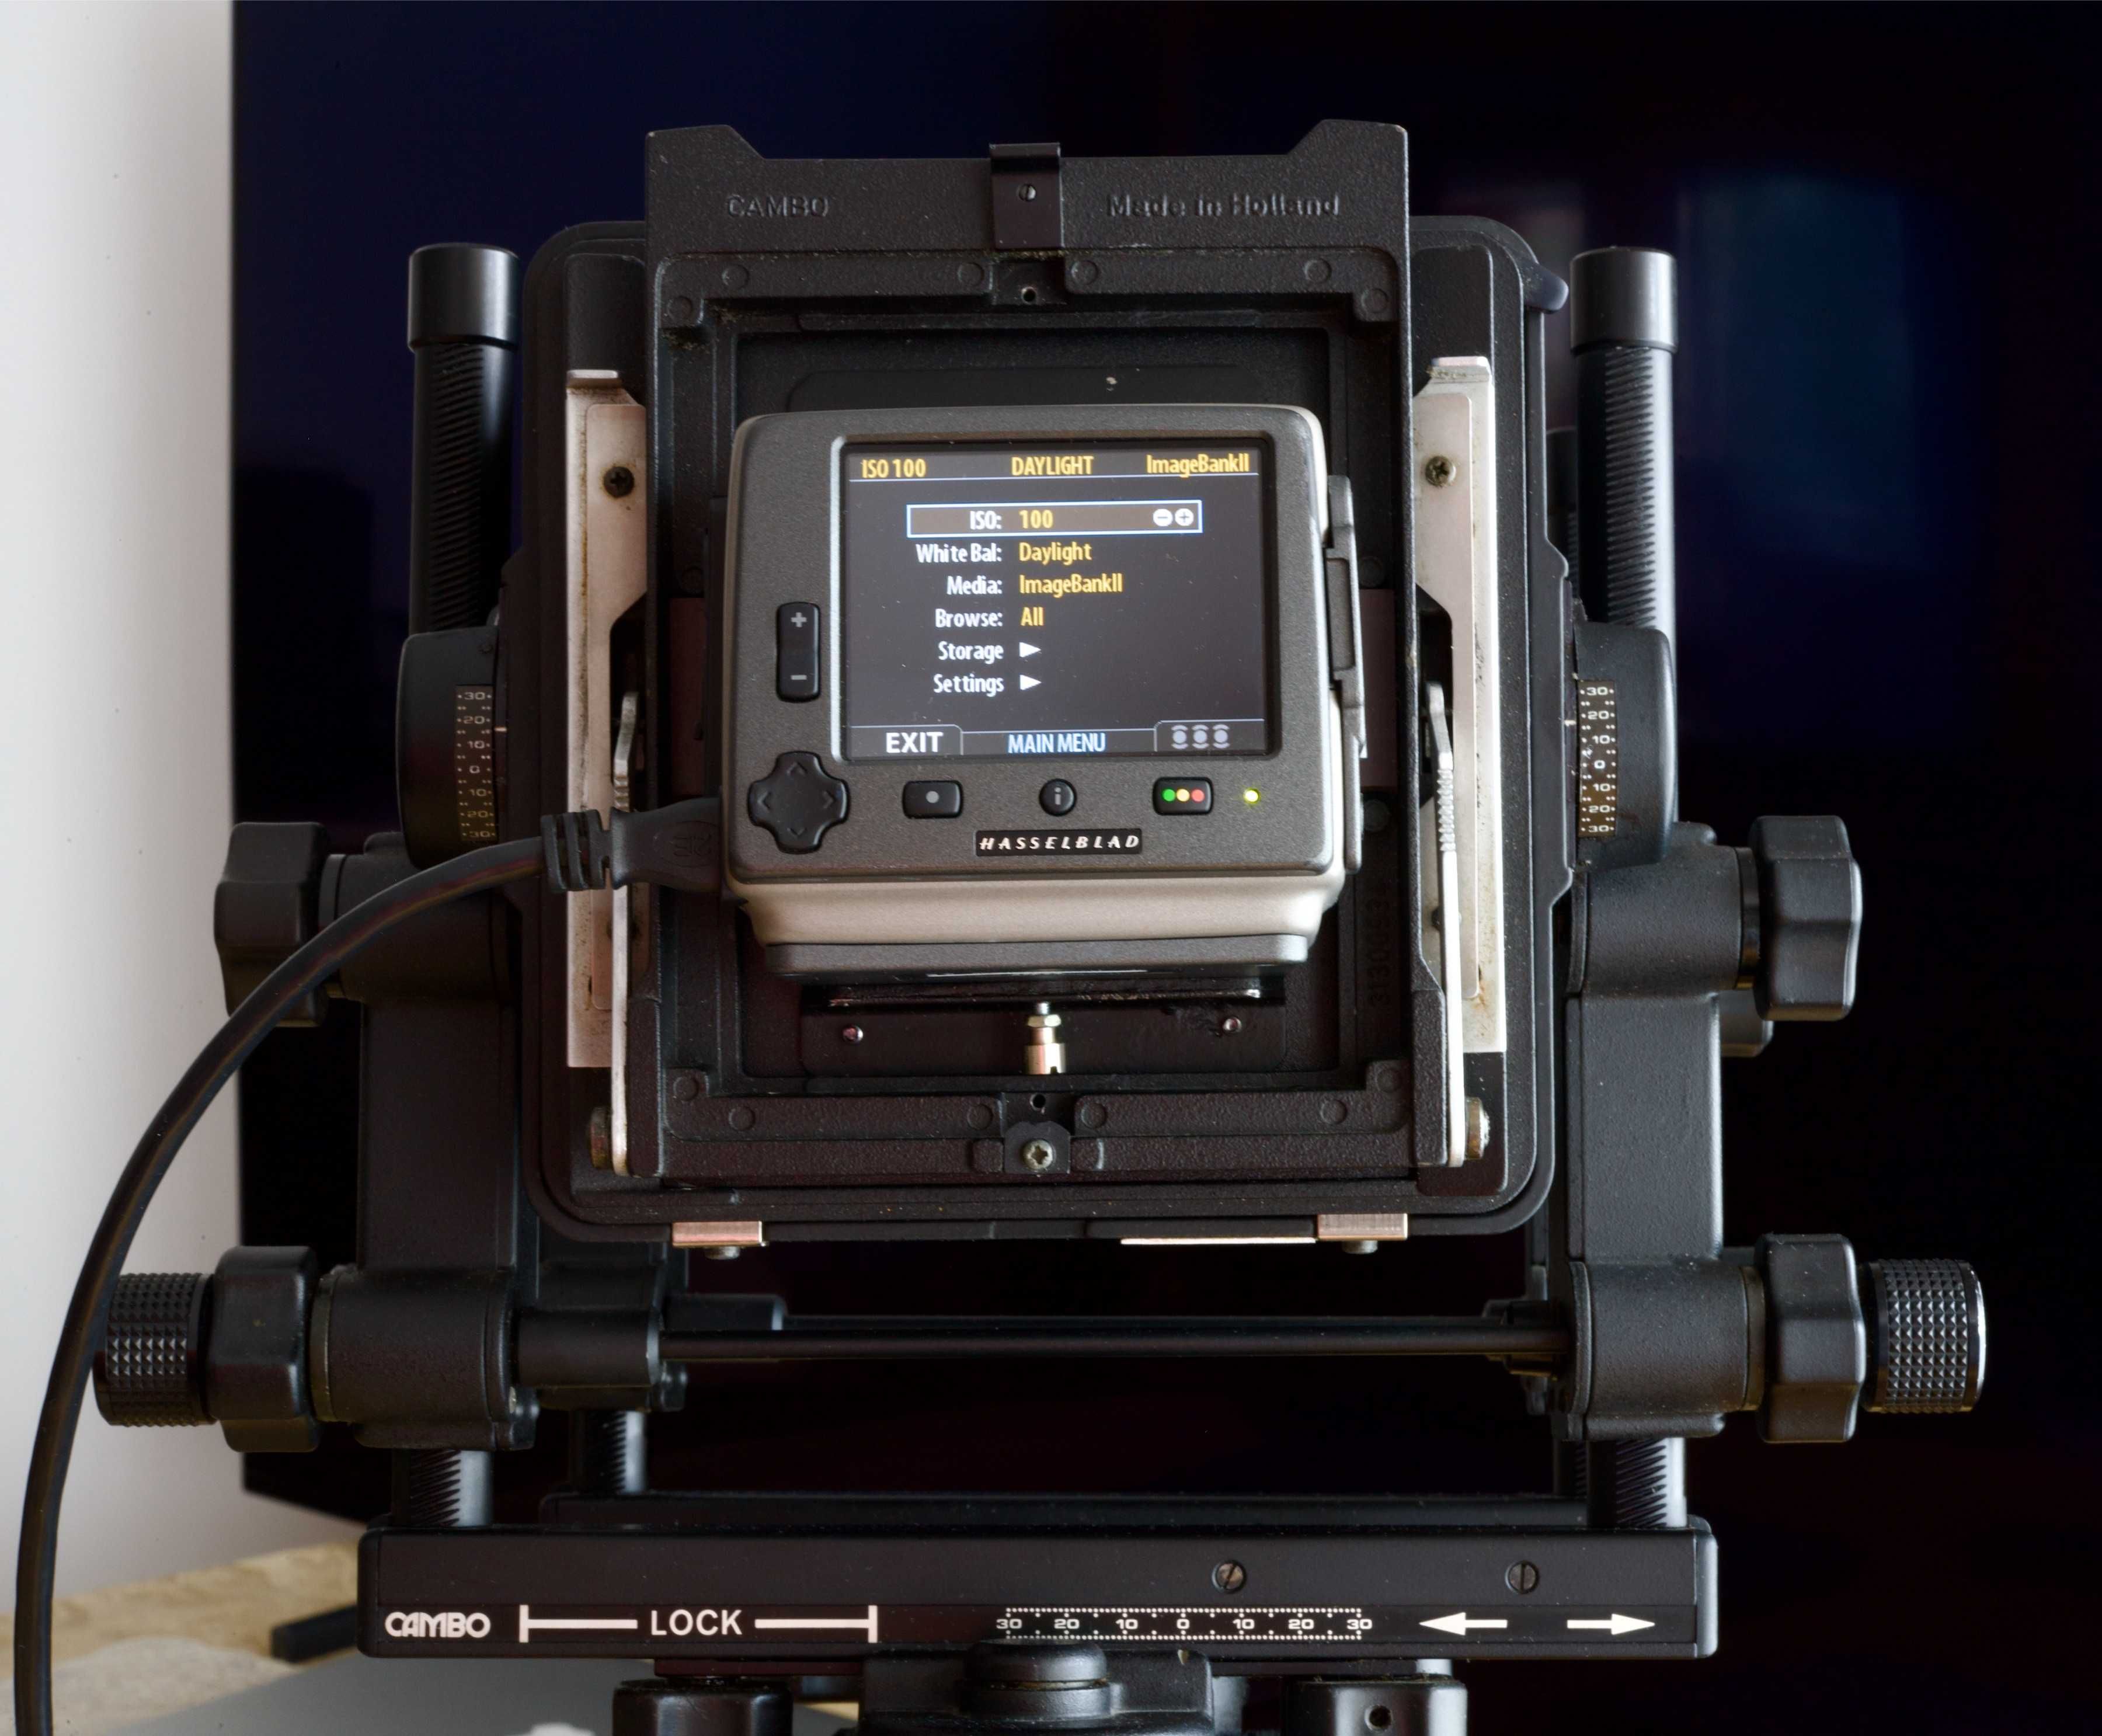 Cambo SCX 4x5 cu back digital Hasselblad H3DII 39- MS (Multi-Shot) CCD